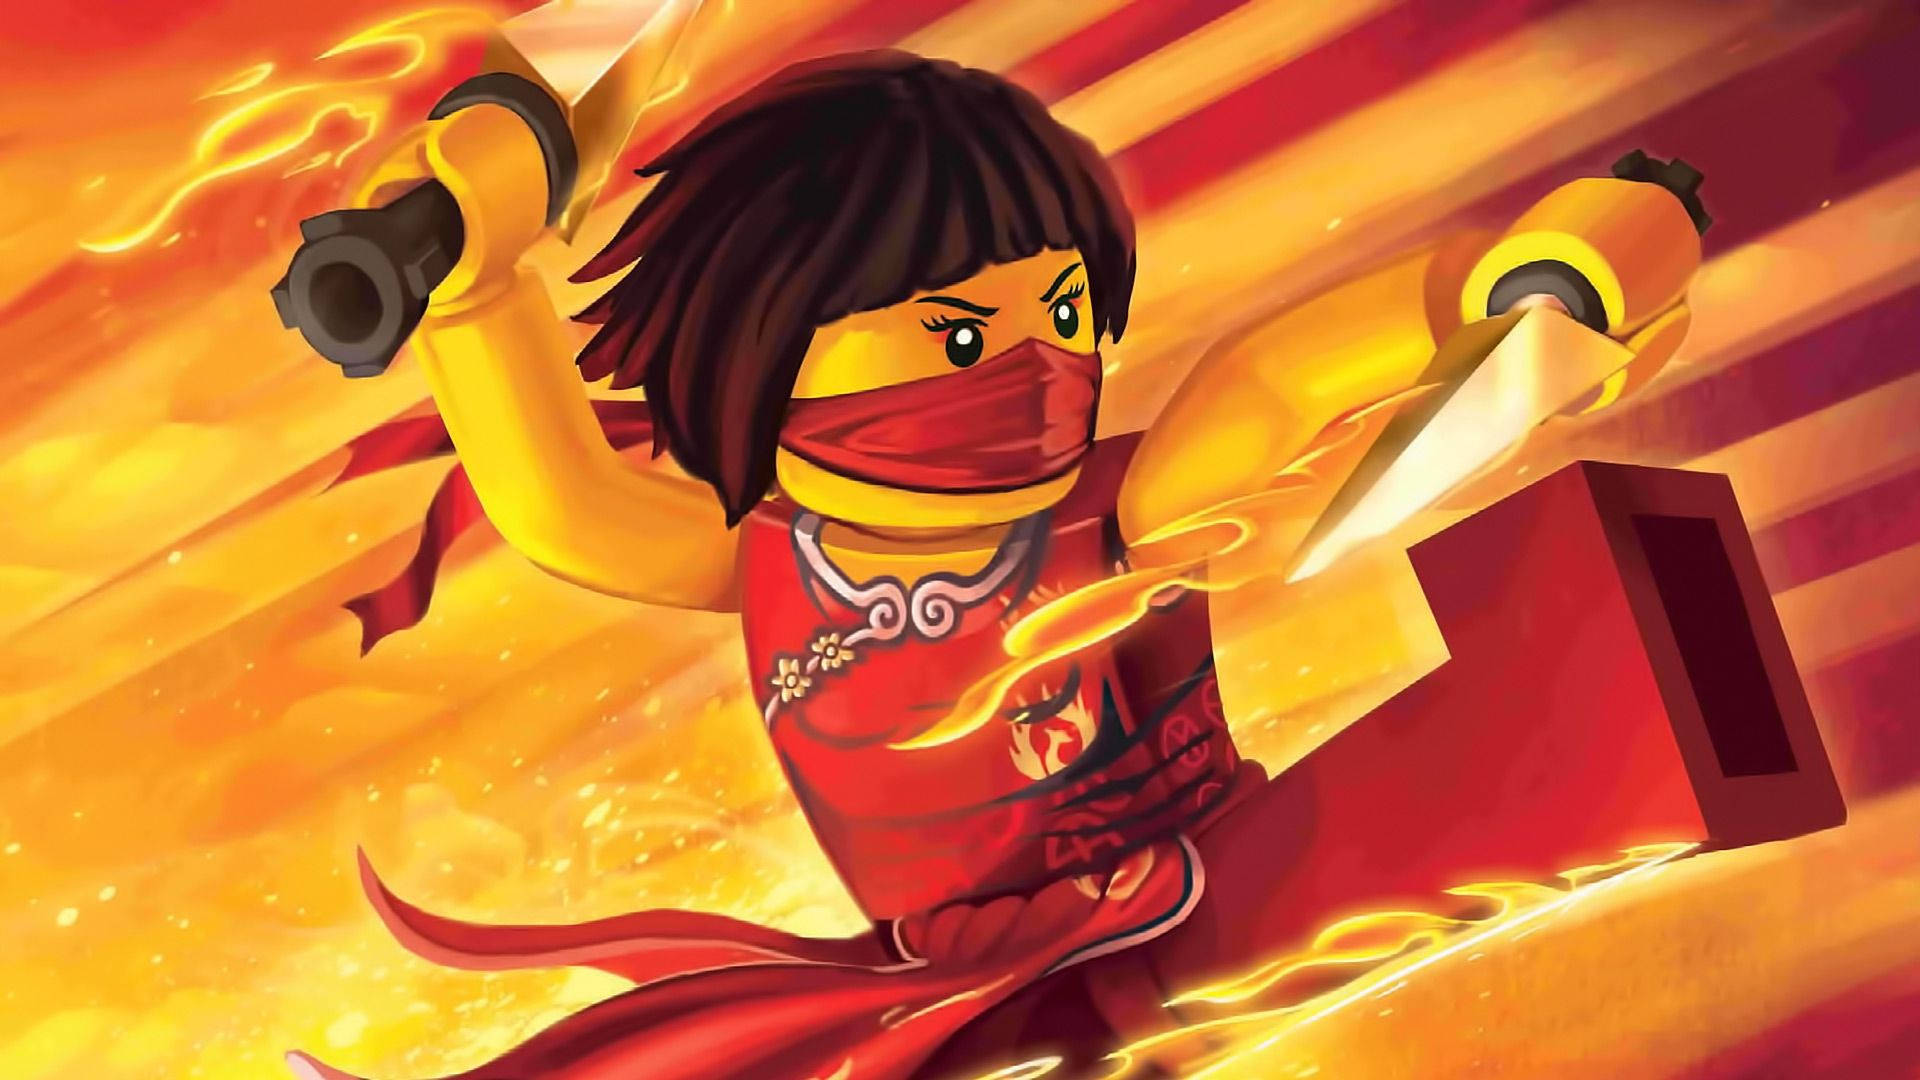 Lego Ninjago Nya In Red Dress